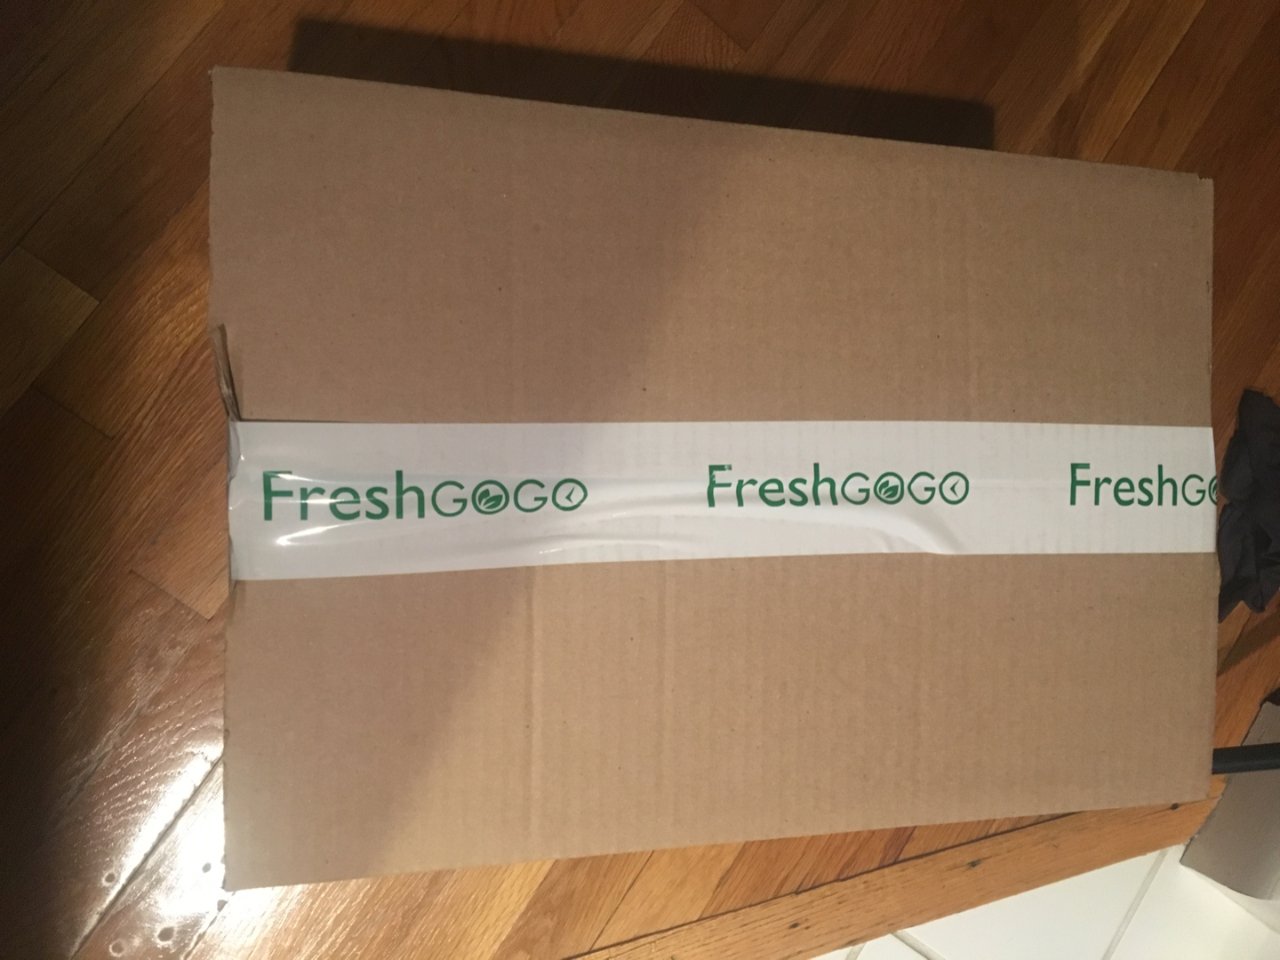 Freshgogo